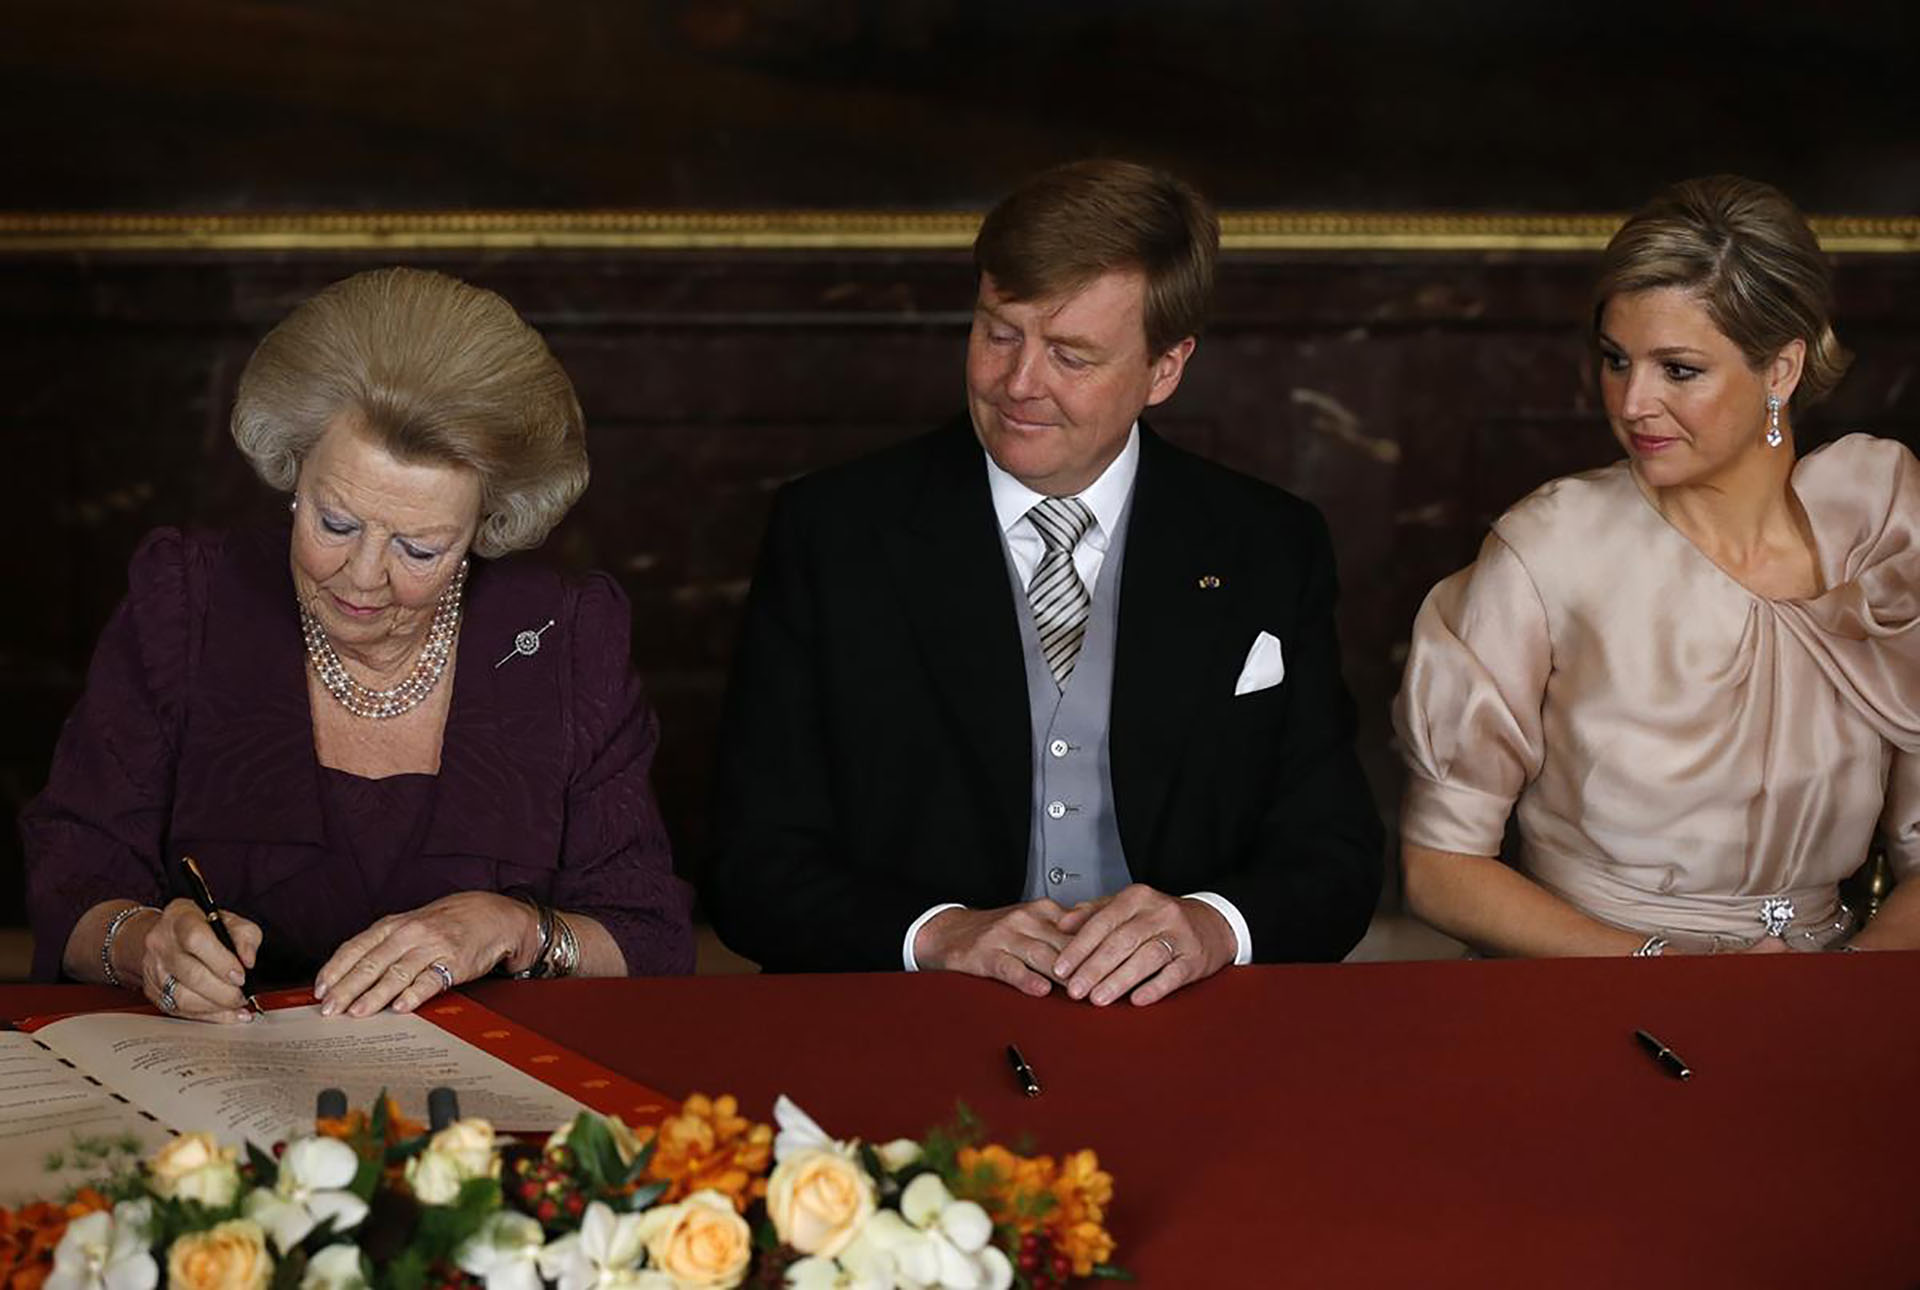 La firma de la abdicación de la Reina Beatriz junto a su sucesor y futura reina consorte, en una ceremonia del 30 de abril de 2013. Reuters